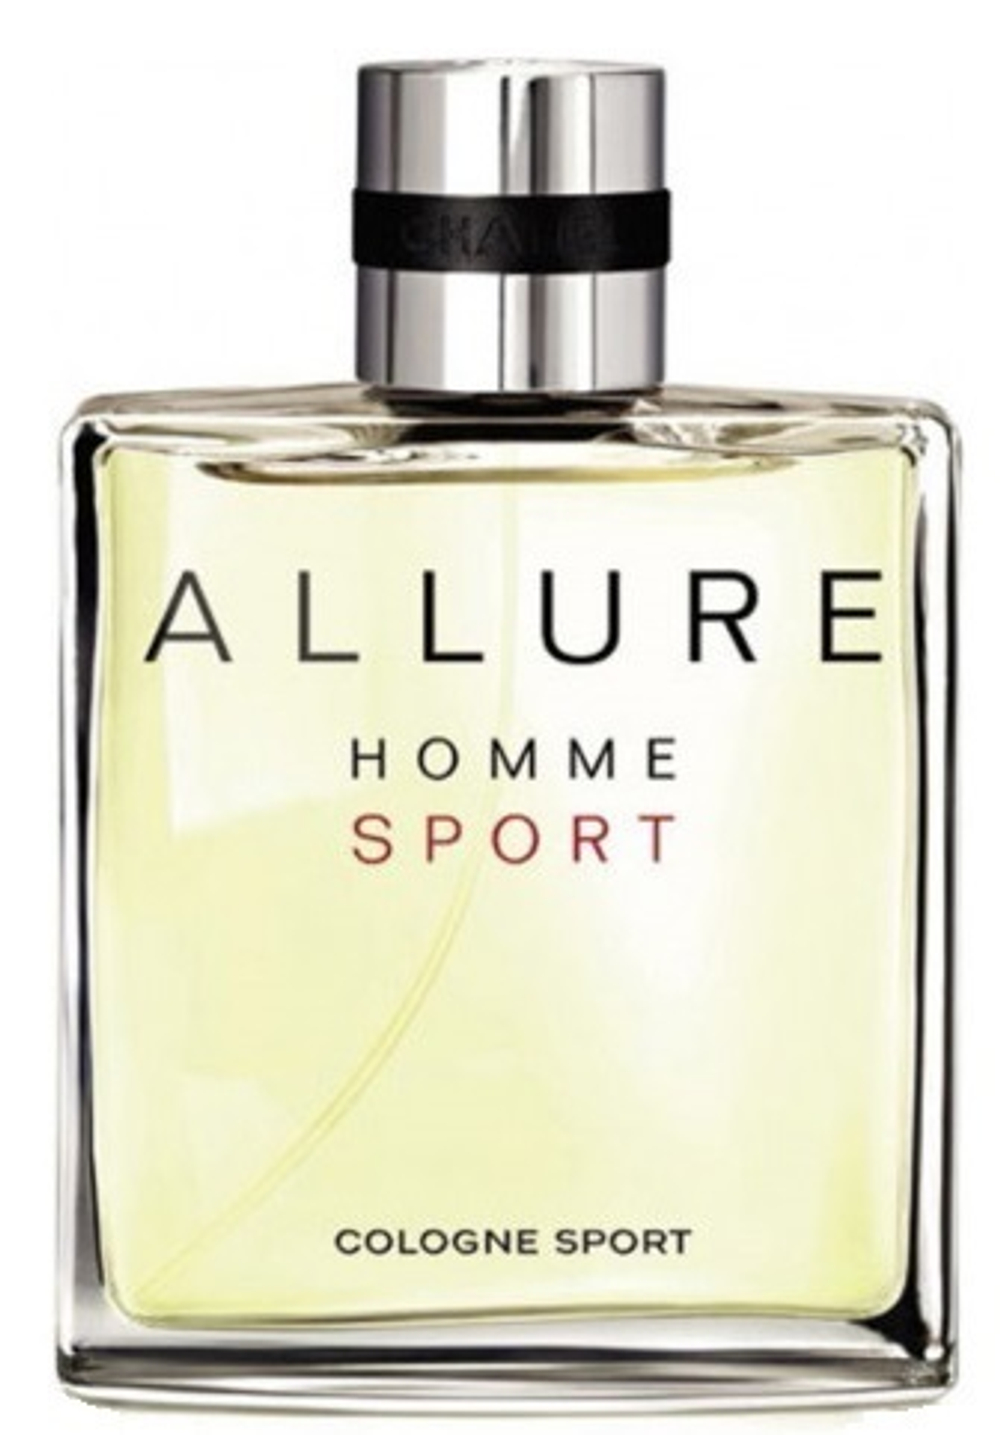 Allure Homme Sport Cologne Chanel cologne - a fragrance for men 2007